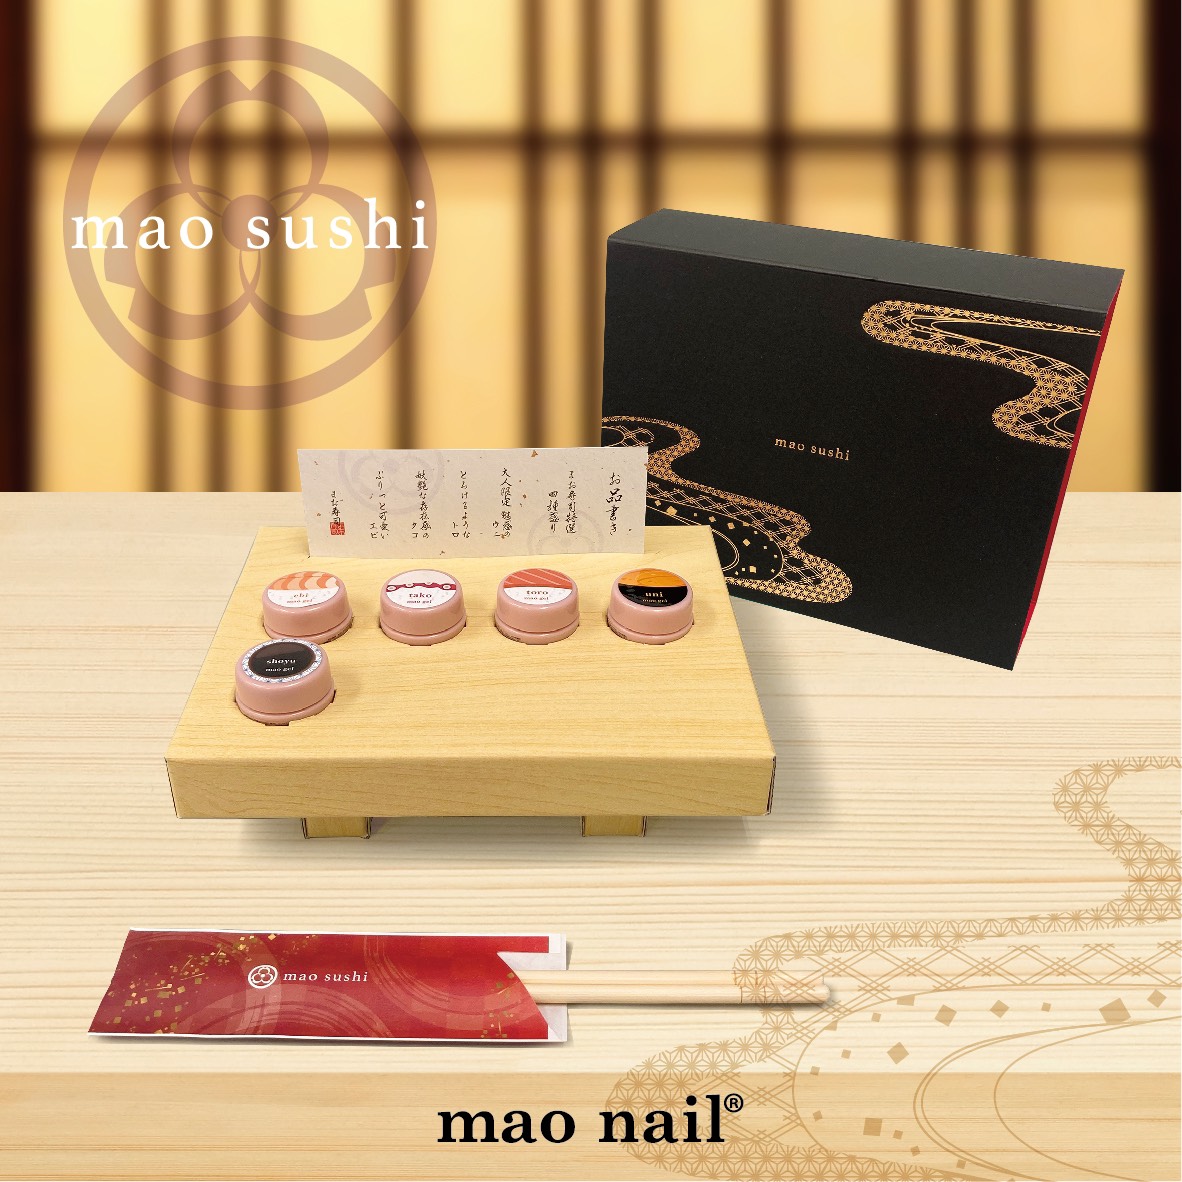 【maonail】マオジェル　まお寿司　全色セット写真を撮るために開封しましたが